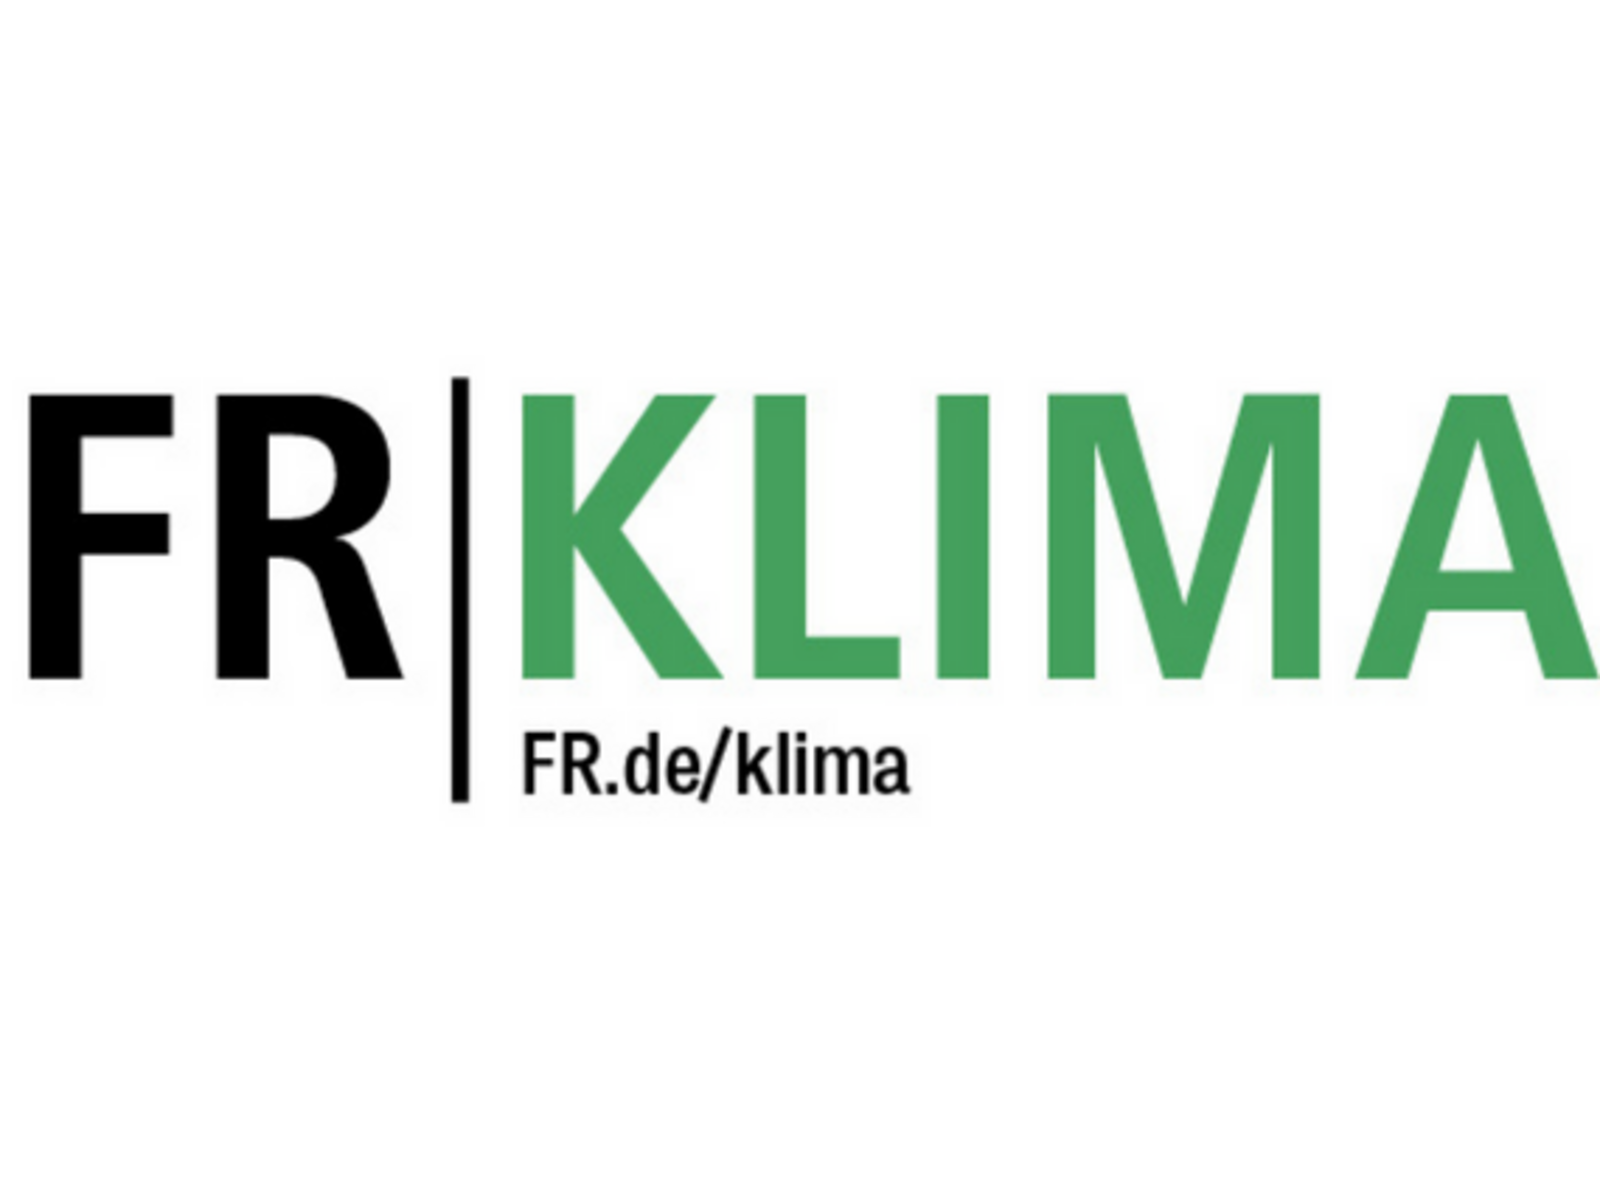 Klimaseite der Frankfurter Rundschau